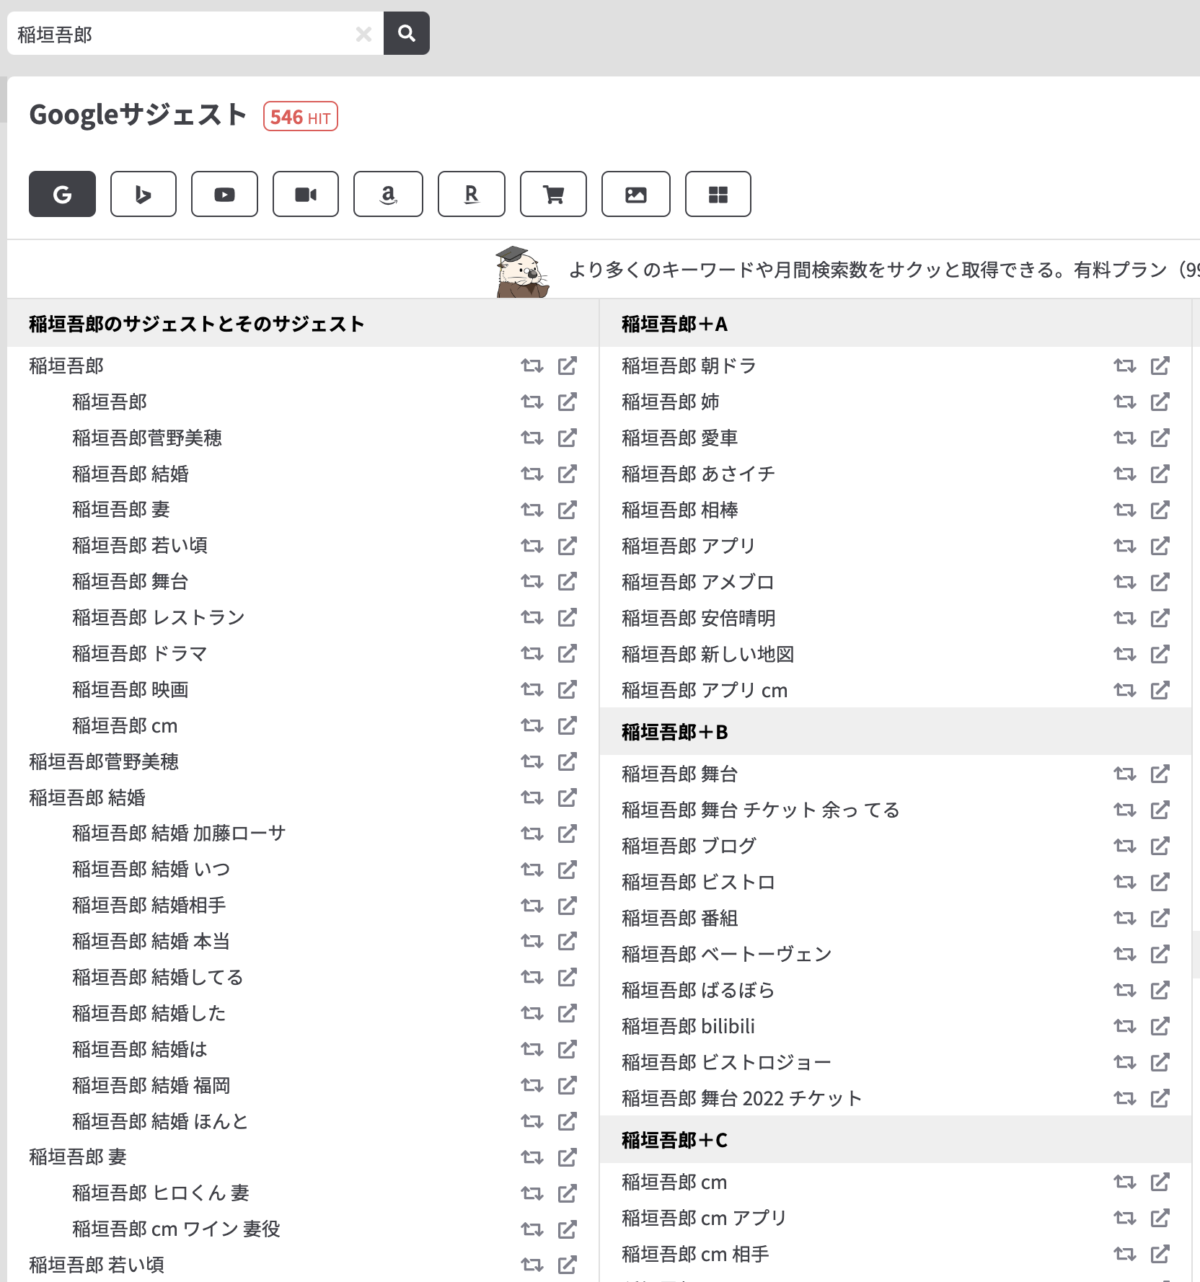 稲垣吾郎と検索した時のラッコキーワードを使ったサジェストの一覧